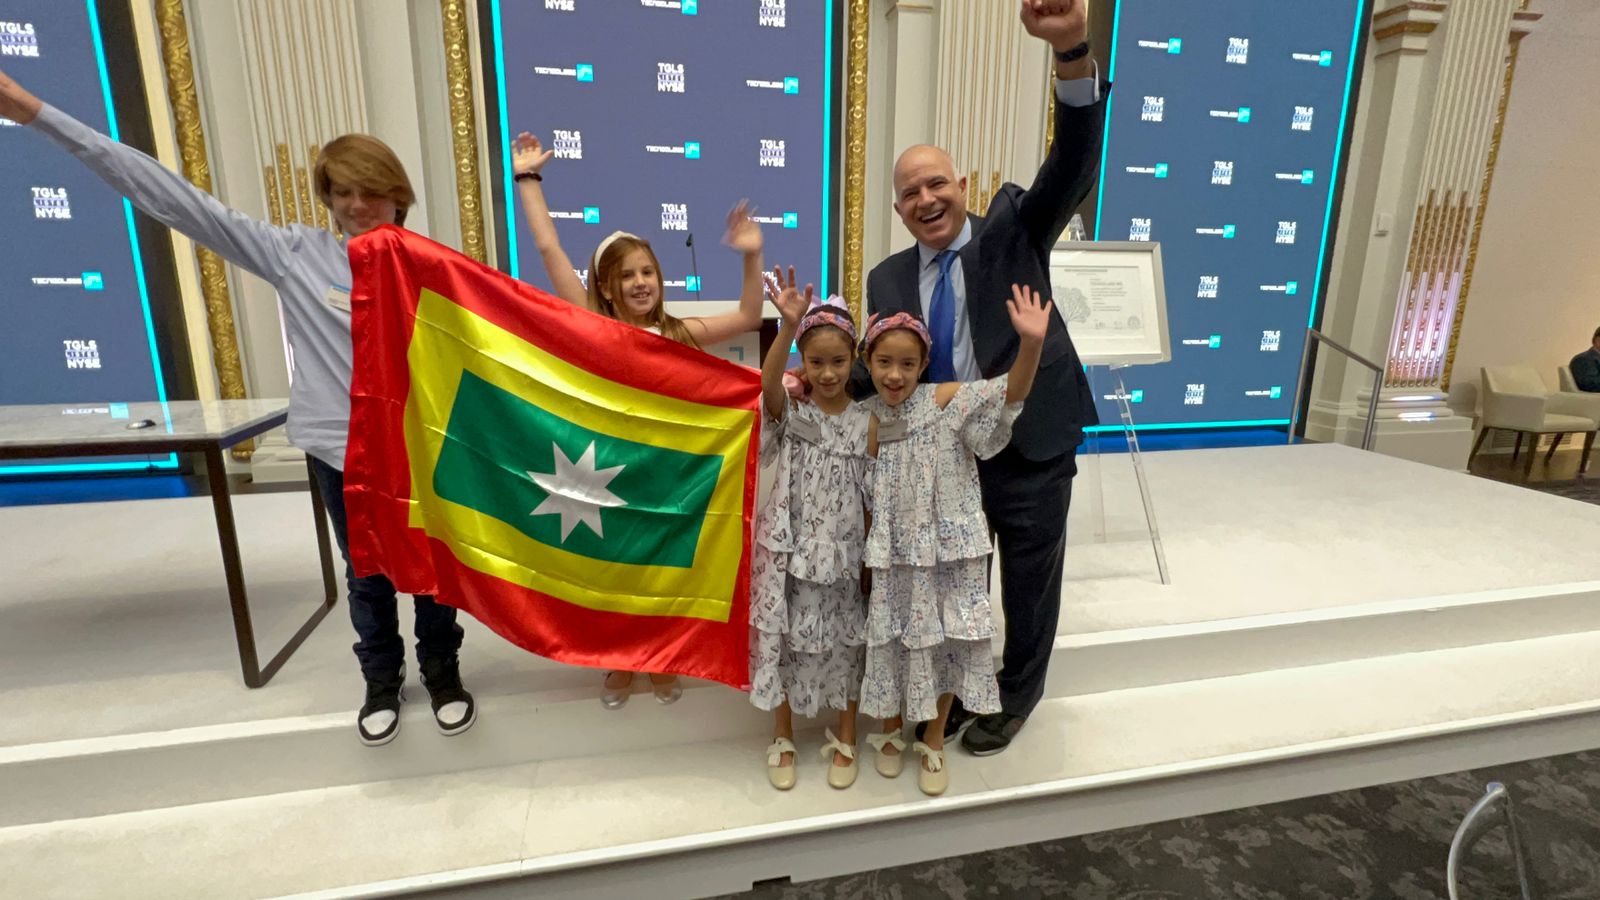 El COO de Tecnoglass, Christian Daes, con sus hijos y niños que acompañaron a la delegación, portando la bandera de Barranquilla, en la Bolsa de Valores de Nueva York, donde tocaron la campana.